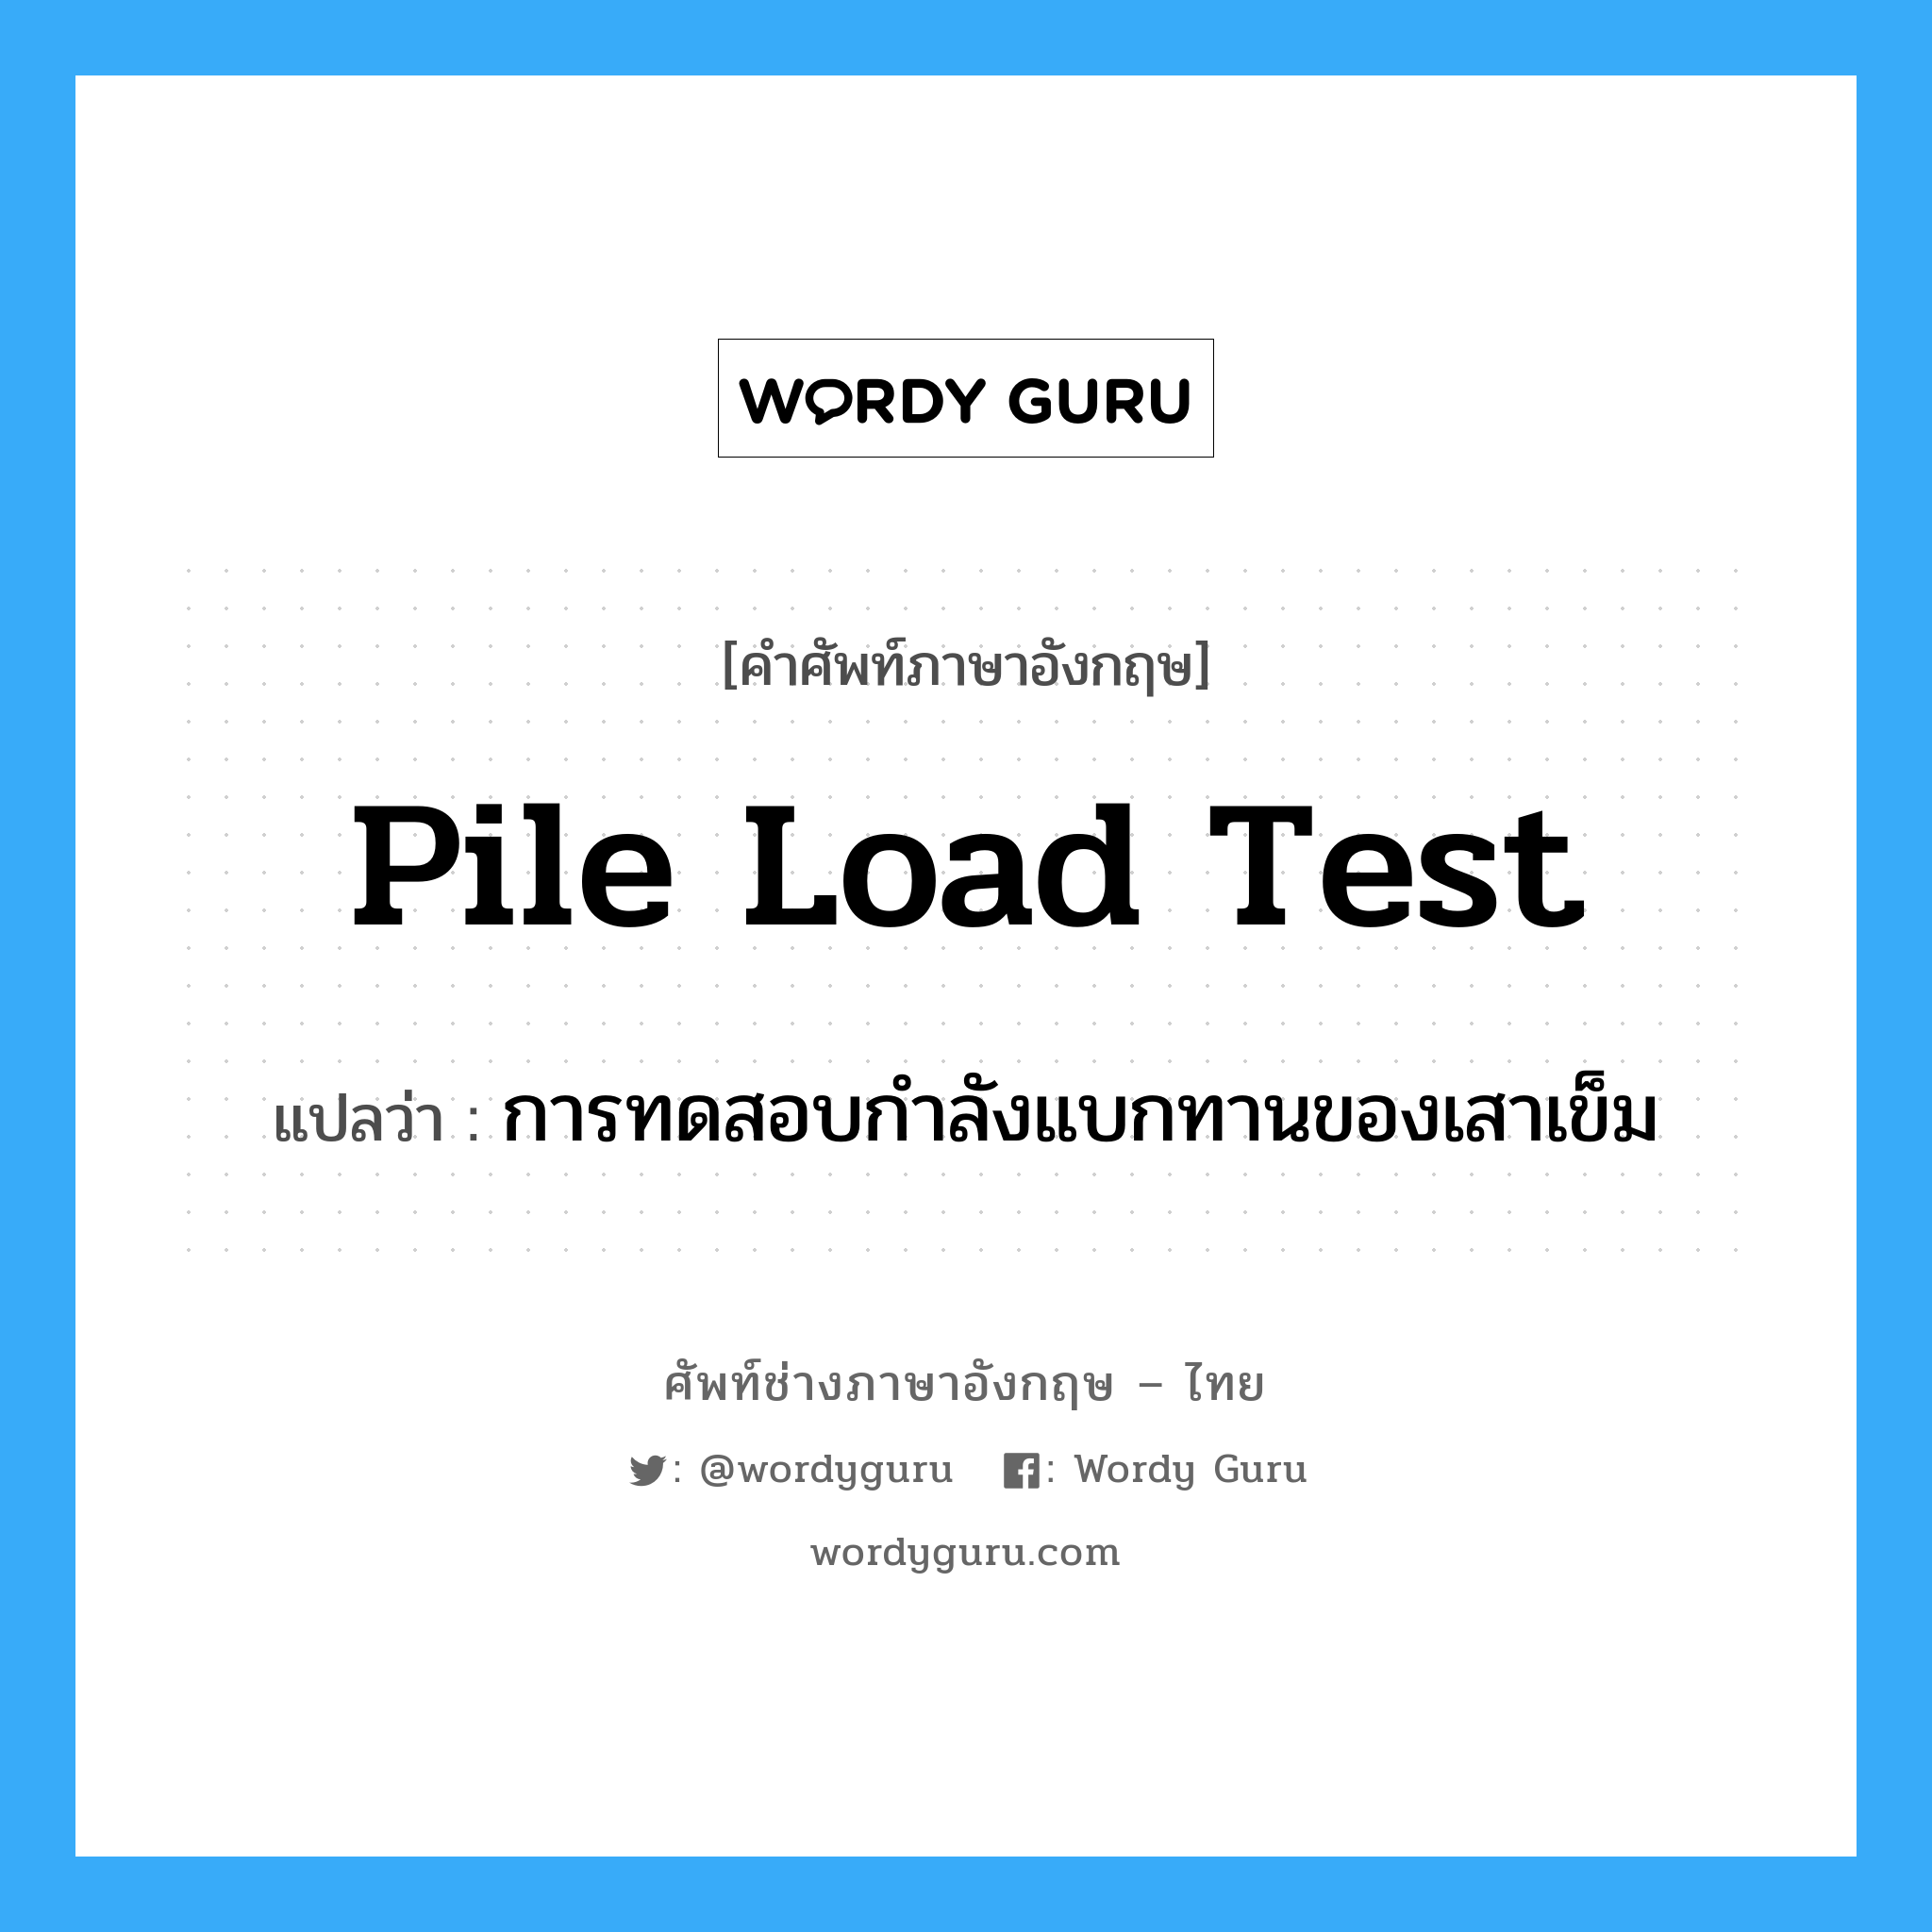 pile load test แปลว่า?, คำศัพท์ช่างภาษาอังกฤษ - ไทย pile load test คำศัพท์ภาษาอังกฤษ pile load test แปลว่า การทดสอบกำลังแบกทานของเสาเข็ม